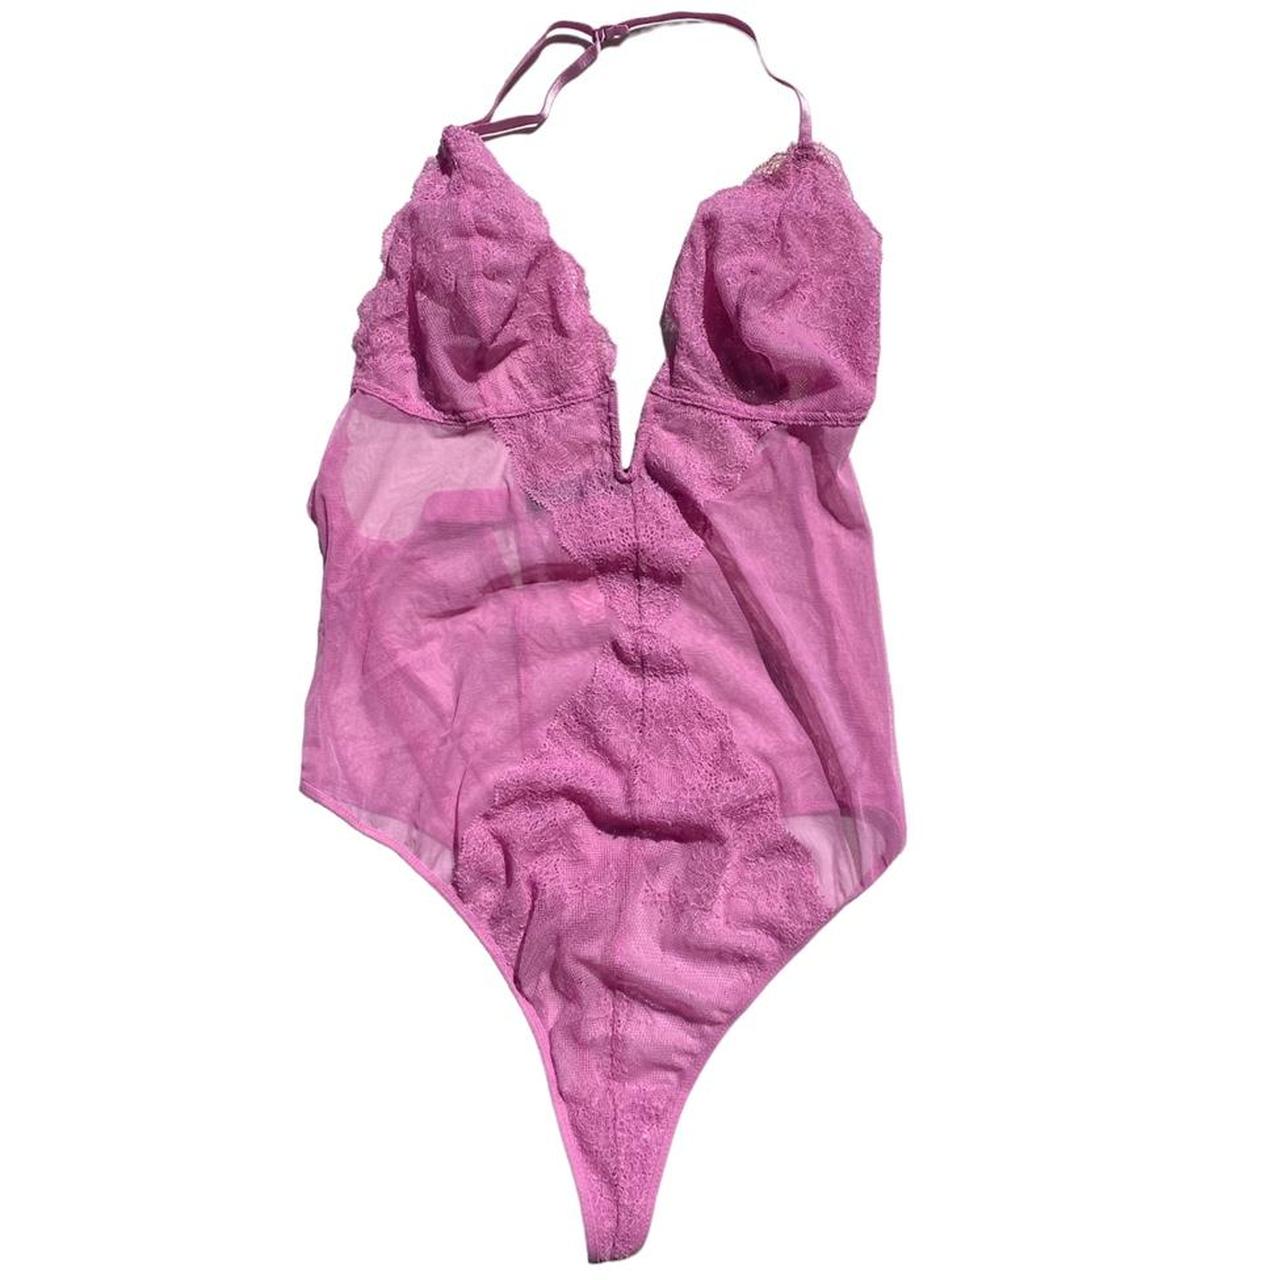 PINK Victoria's Secret, Intimates & Sleepwear, Vs Pink Underwear Nwt